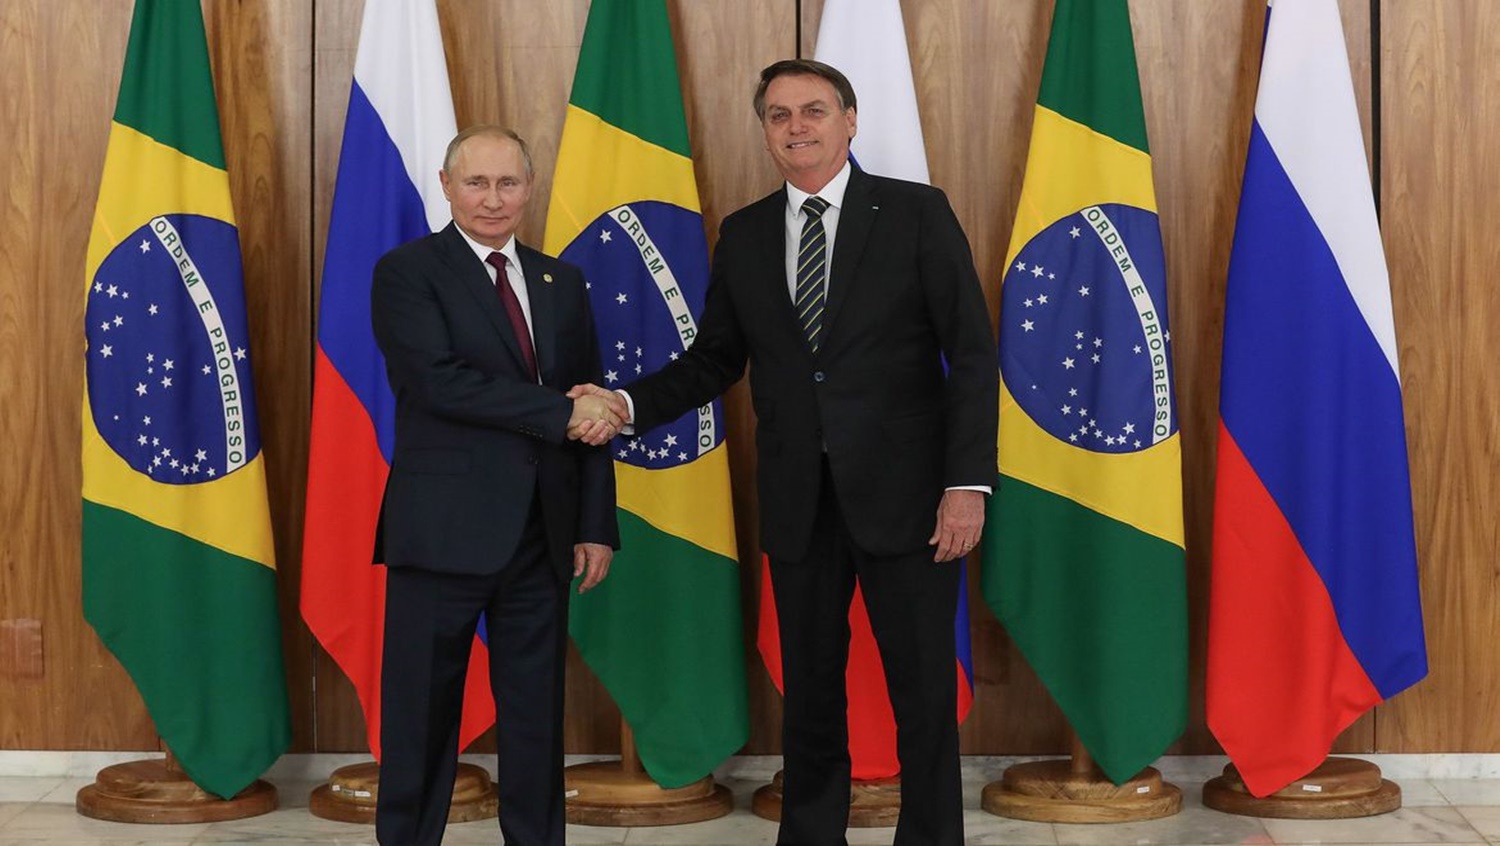 ENCONTRO: Presidente Bolsonaro vai para a Rússia em meio a tensão com os EUA